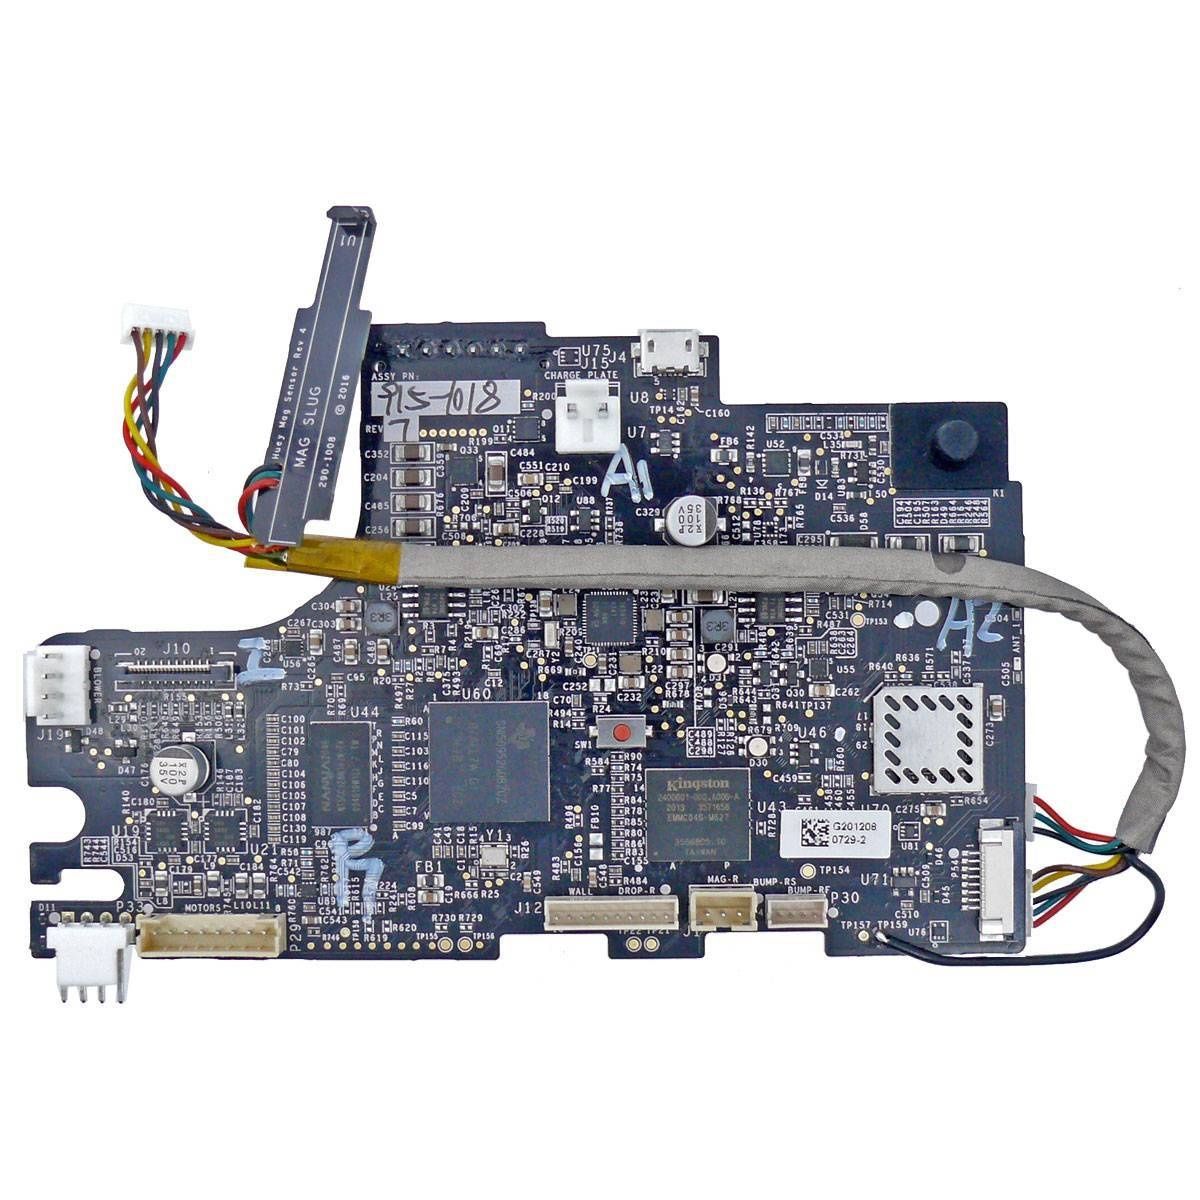 Neato płyta główna odkurzacz Botvac Connected D6 D7 PCB